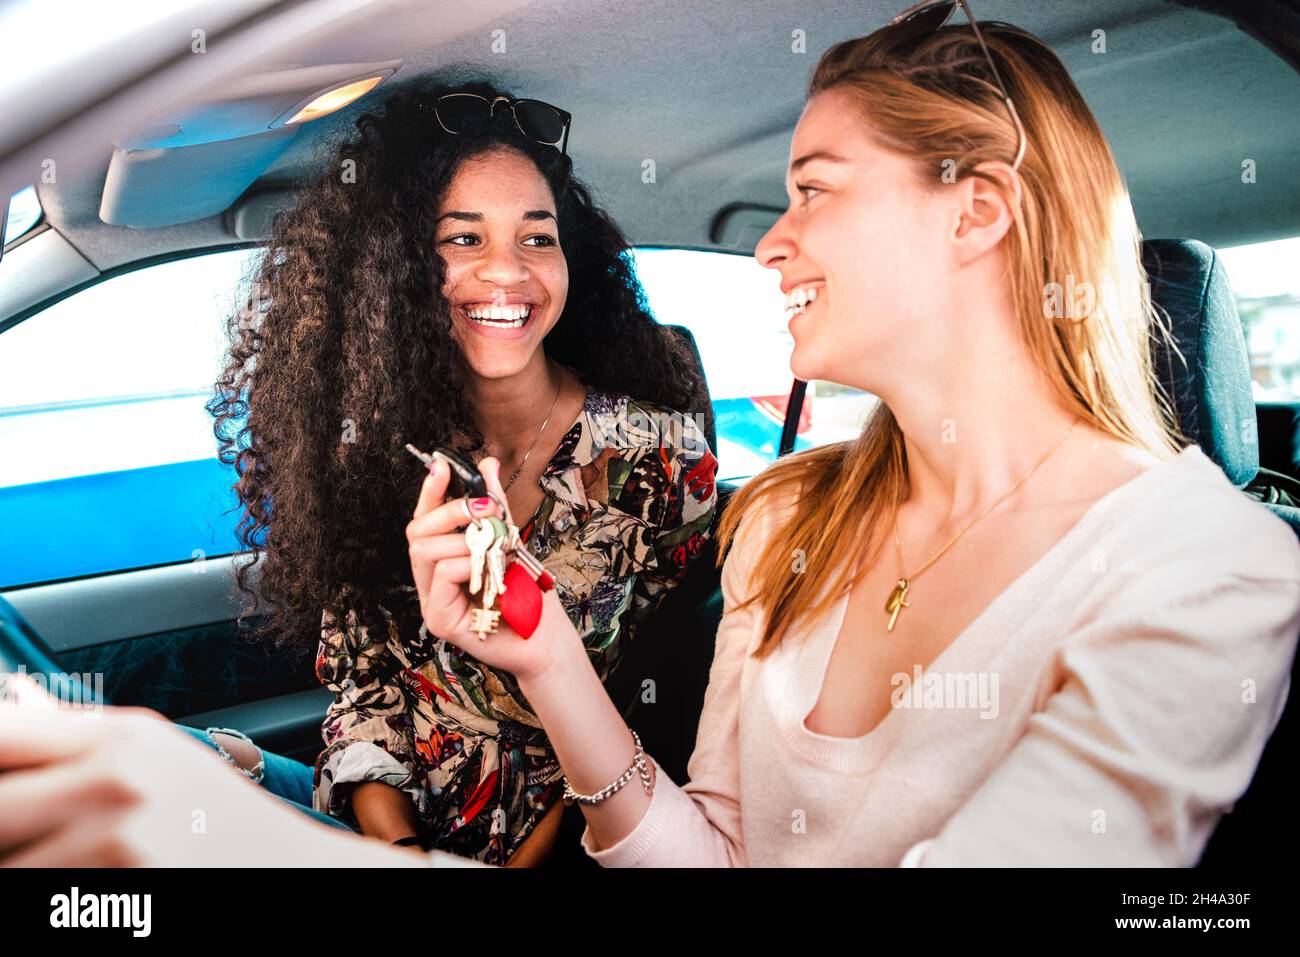 Glückliche weibliche beste Freundinnen, die Spaß an der Autoreise haben - Transportkonzept und urbanes gewöhnliches Leben mit jungen Frauen Freundinnen bei glücklichen Reisen Stockfoto